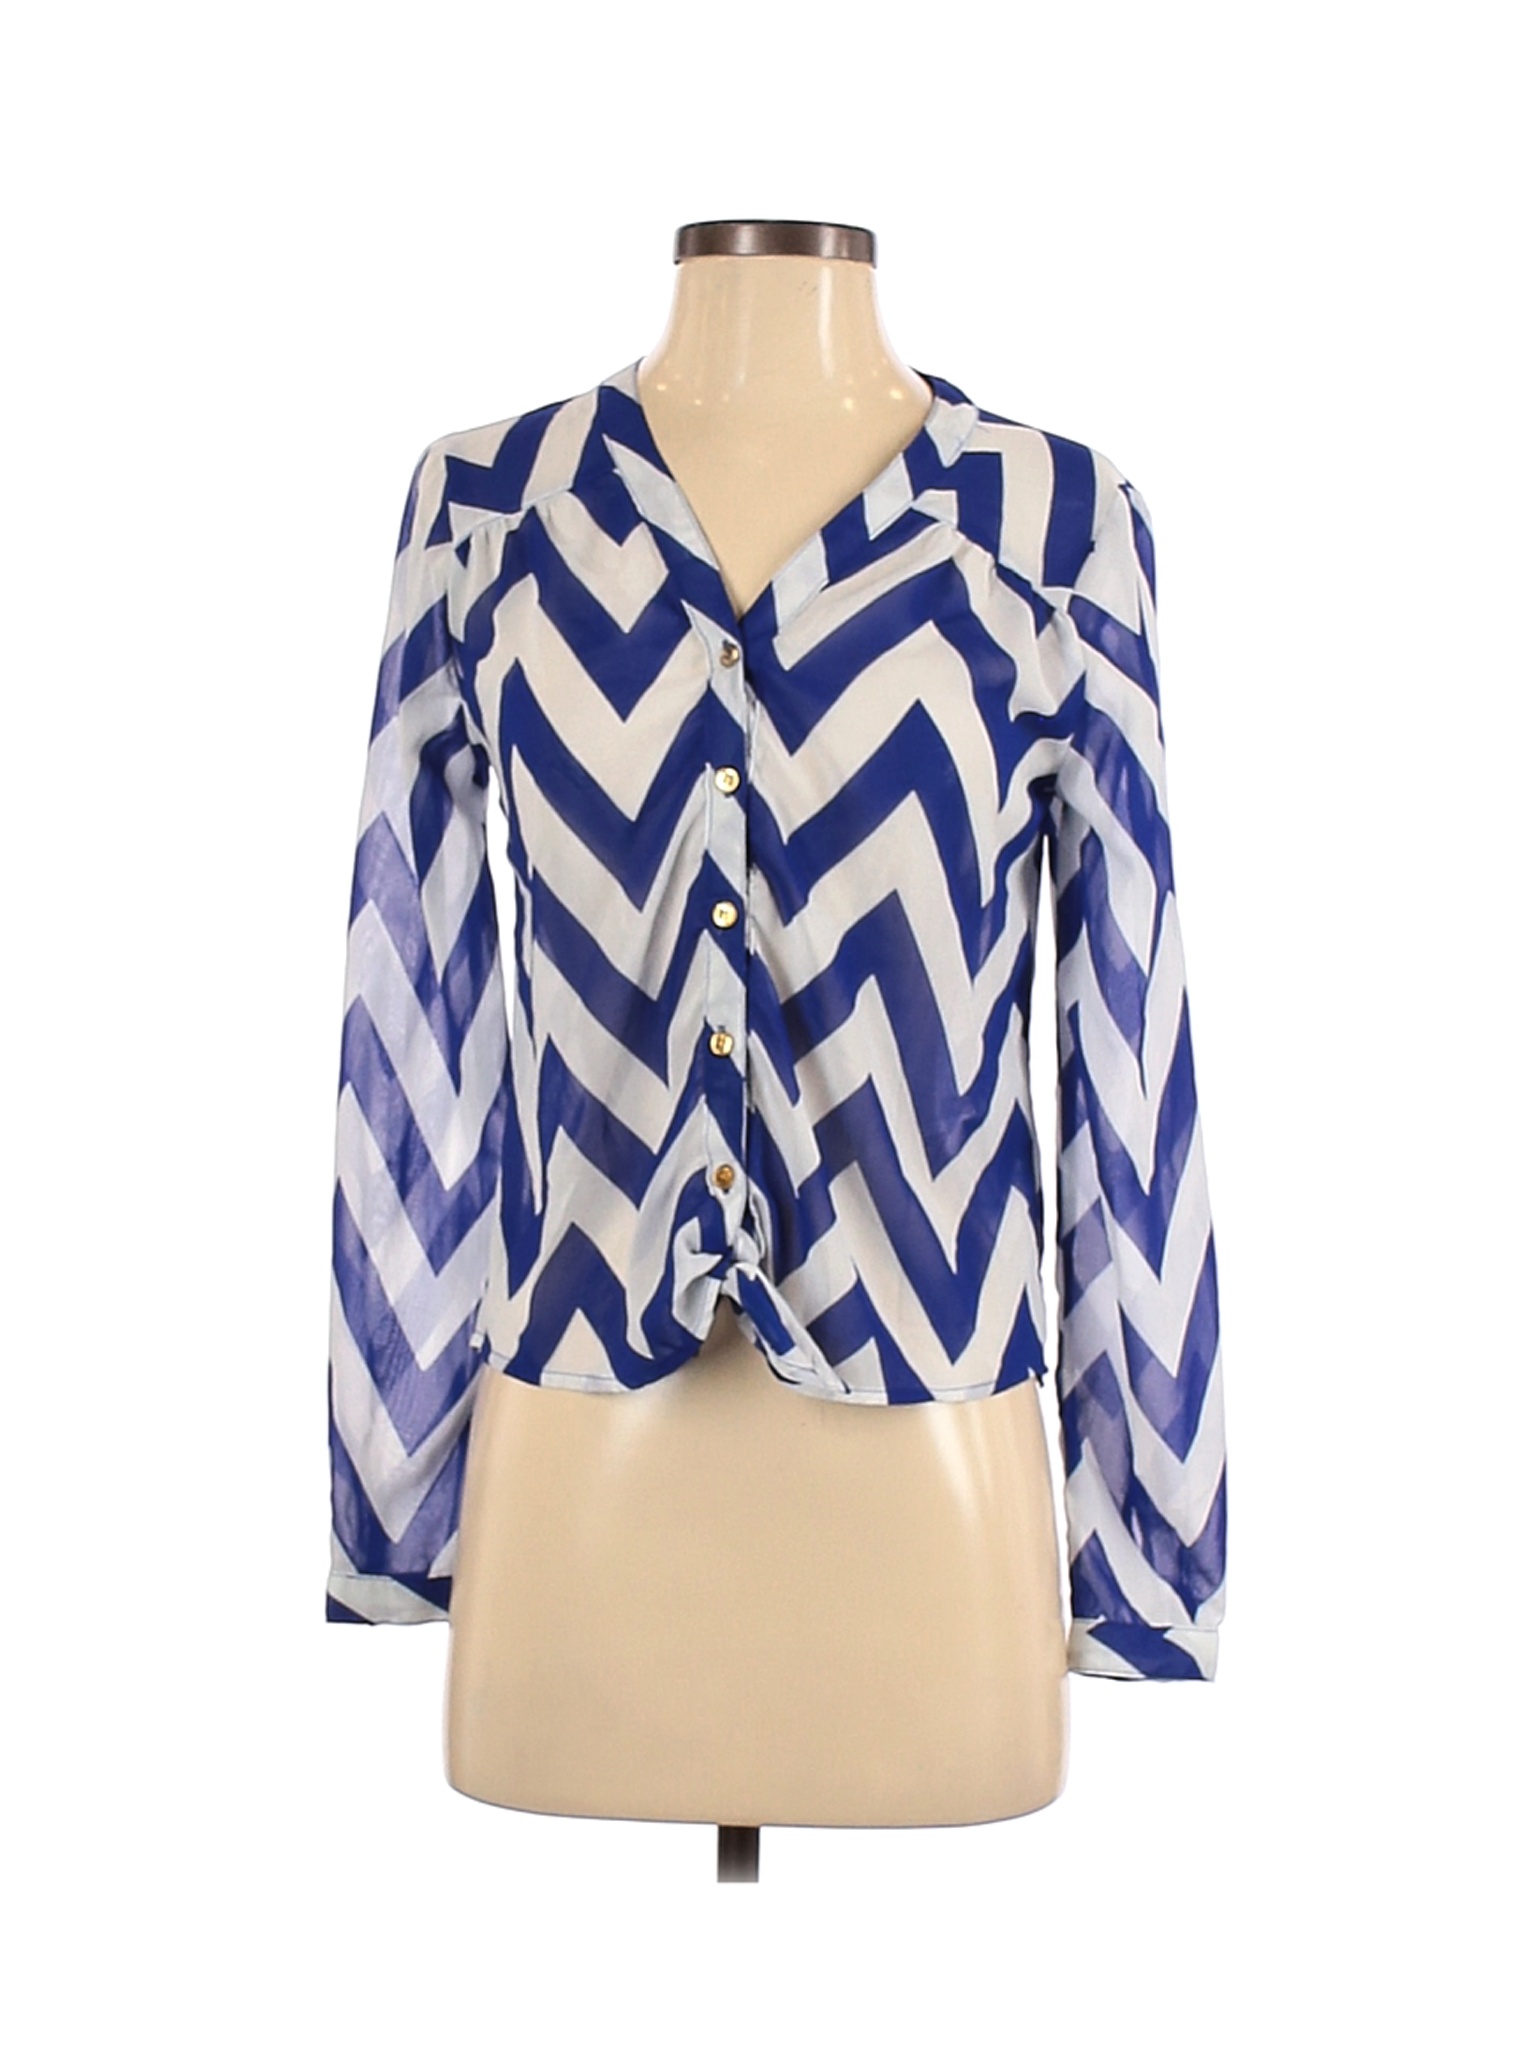 Charlotte Russe Women Blue Long Sleeve Blouse XS | eBay